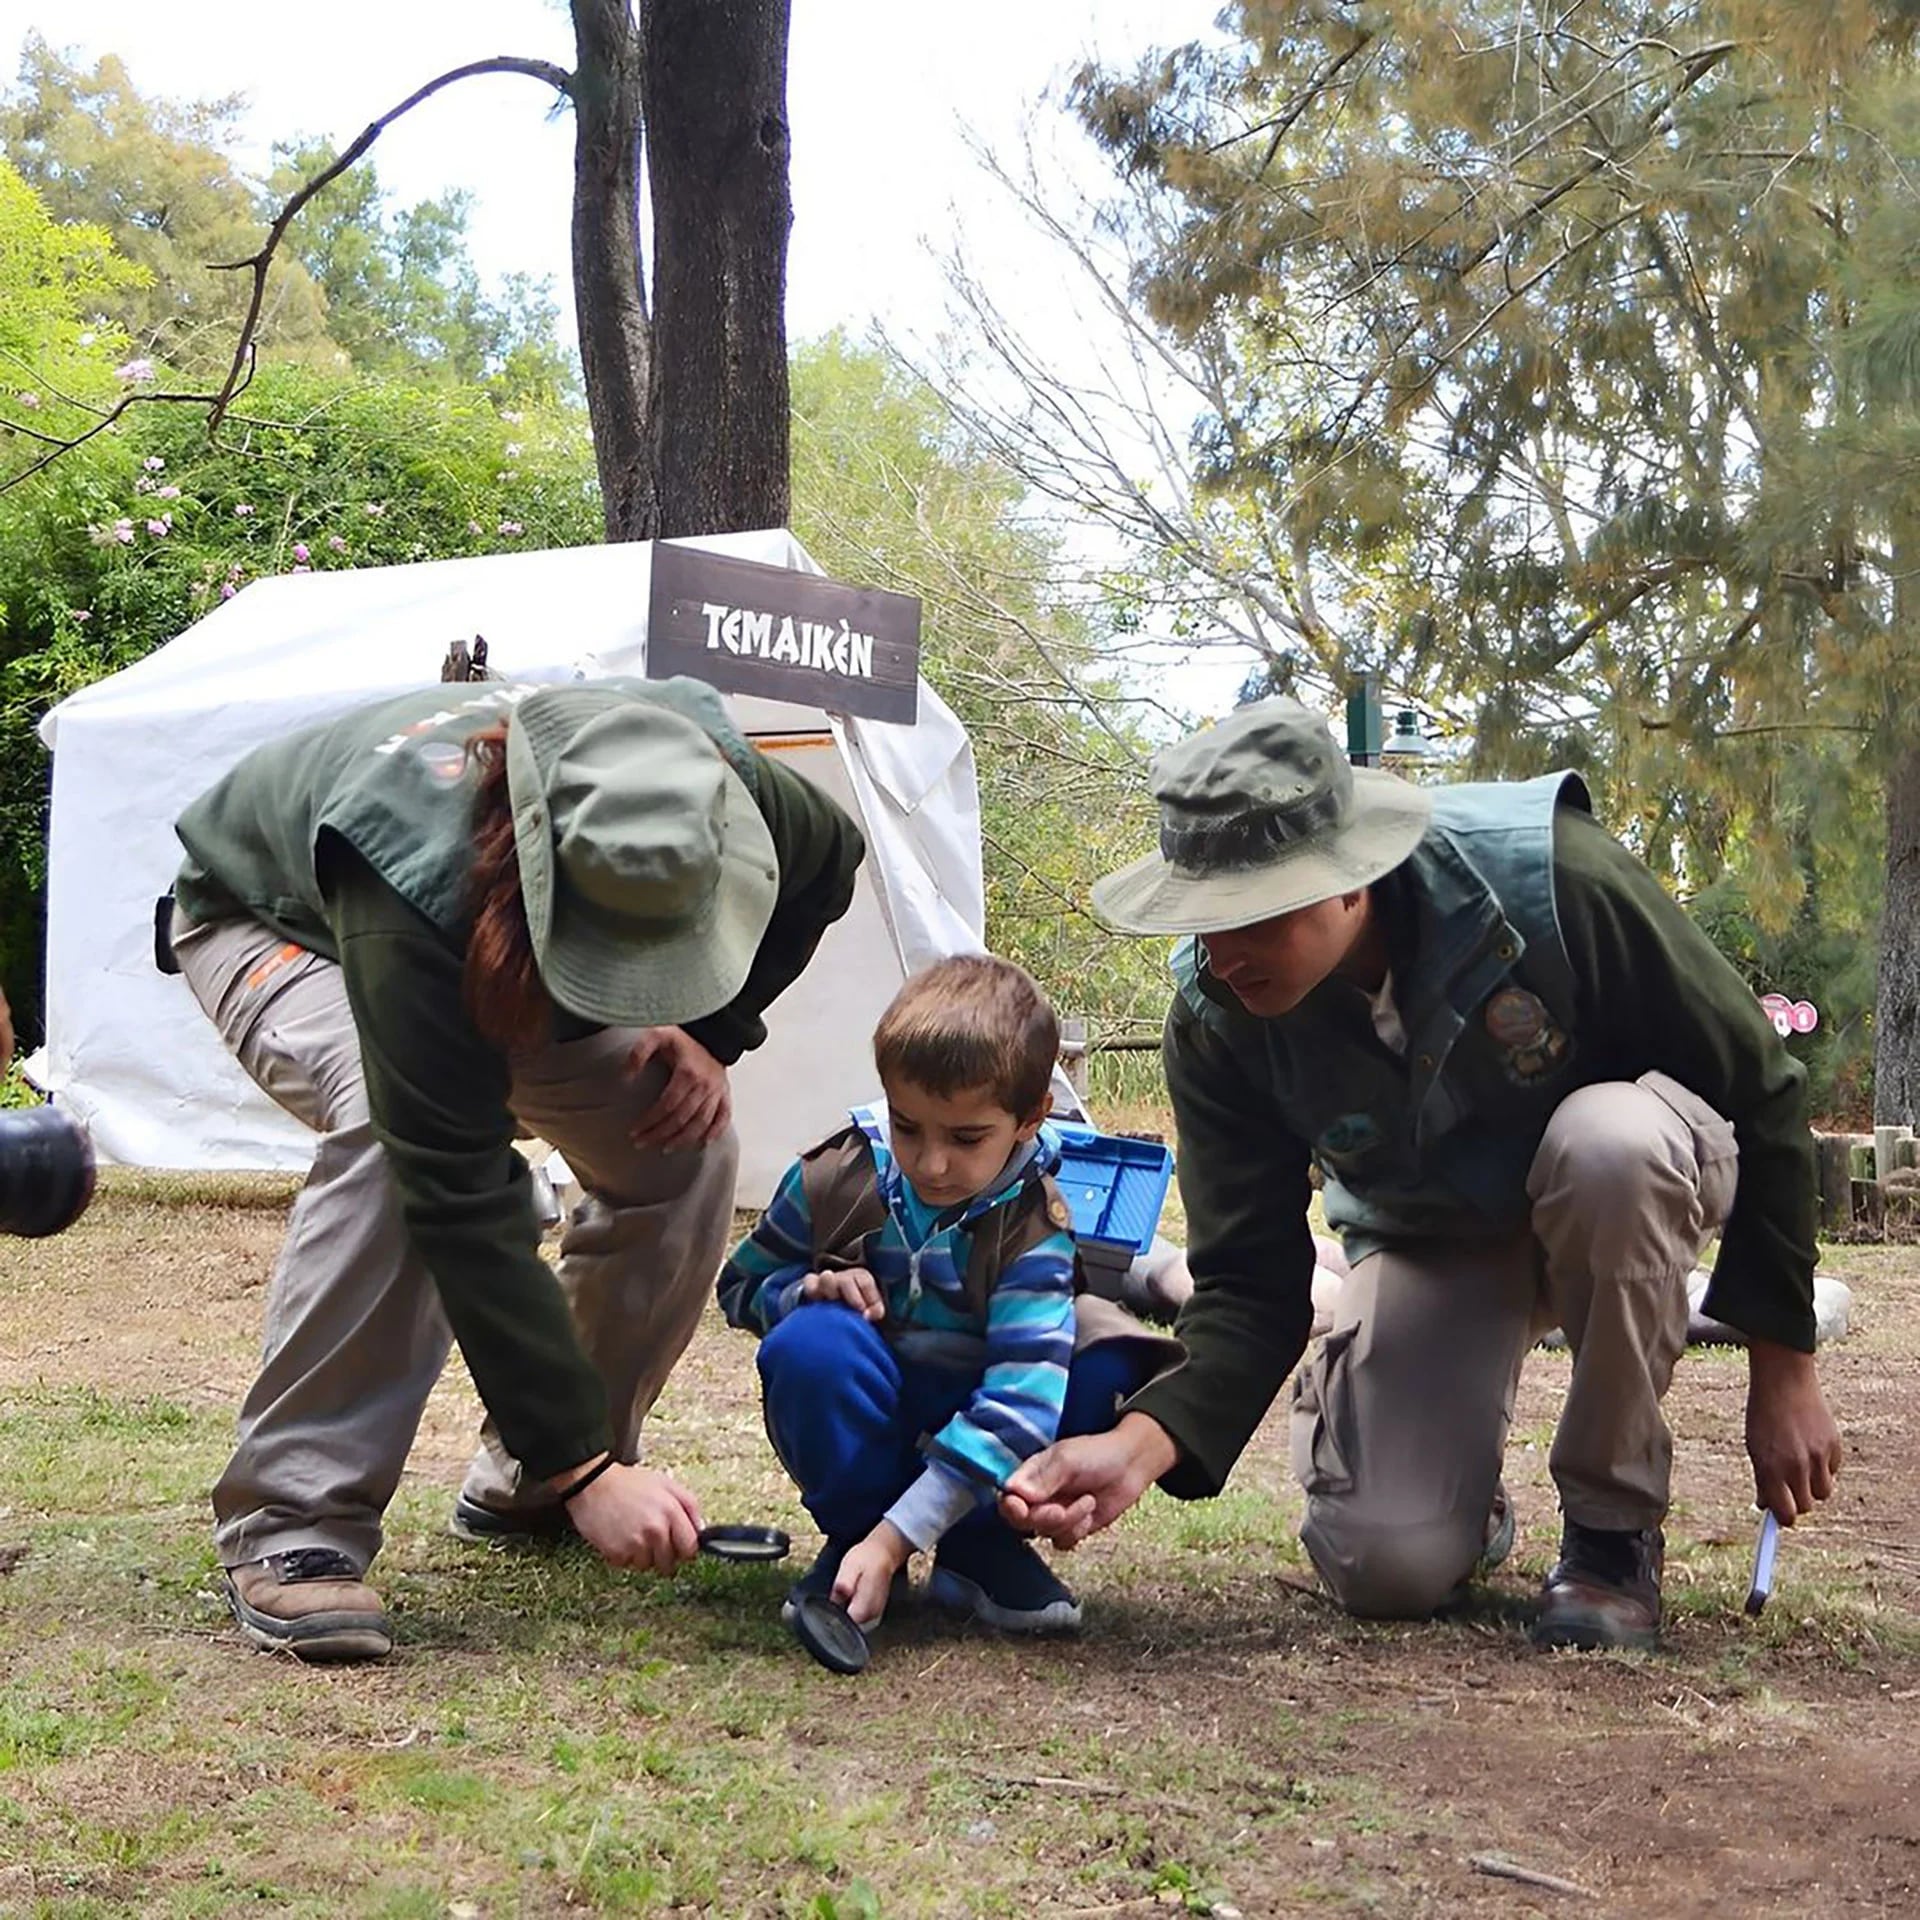 El bioparque ofrece excursiones para que los más chicos se acerquen a la naturaleza (Temaikén)